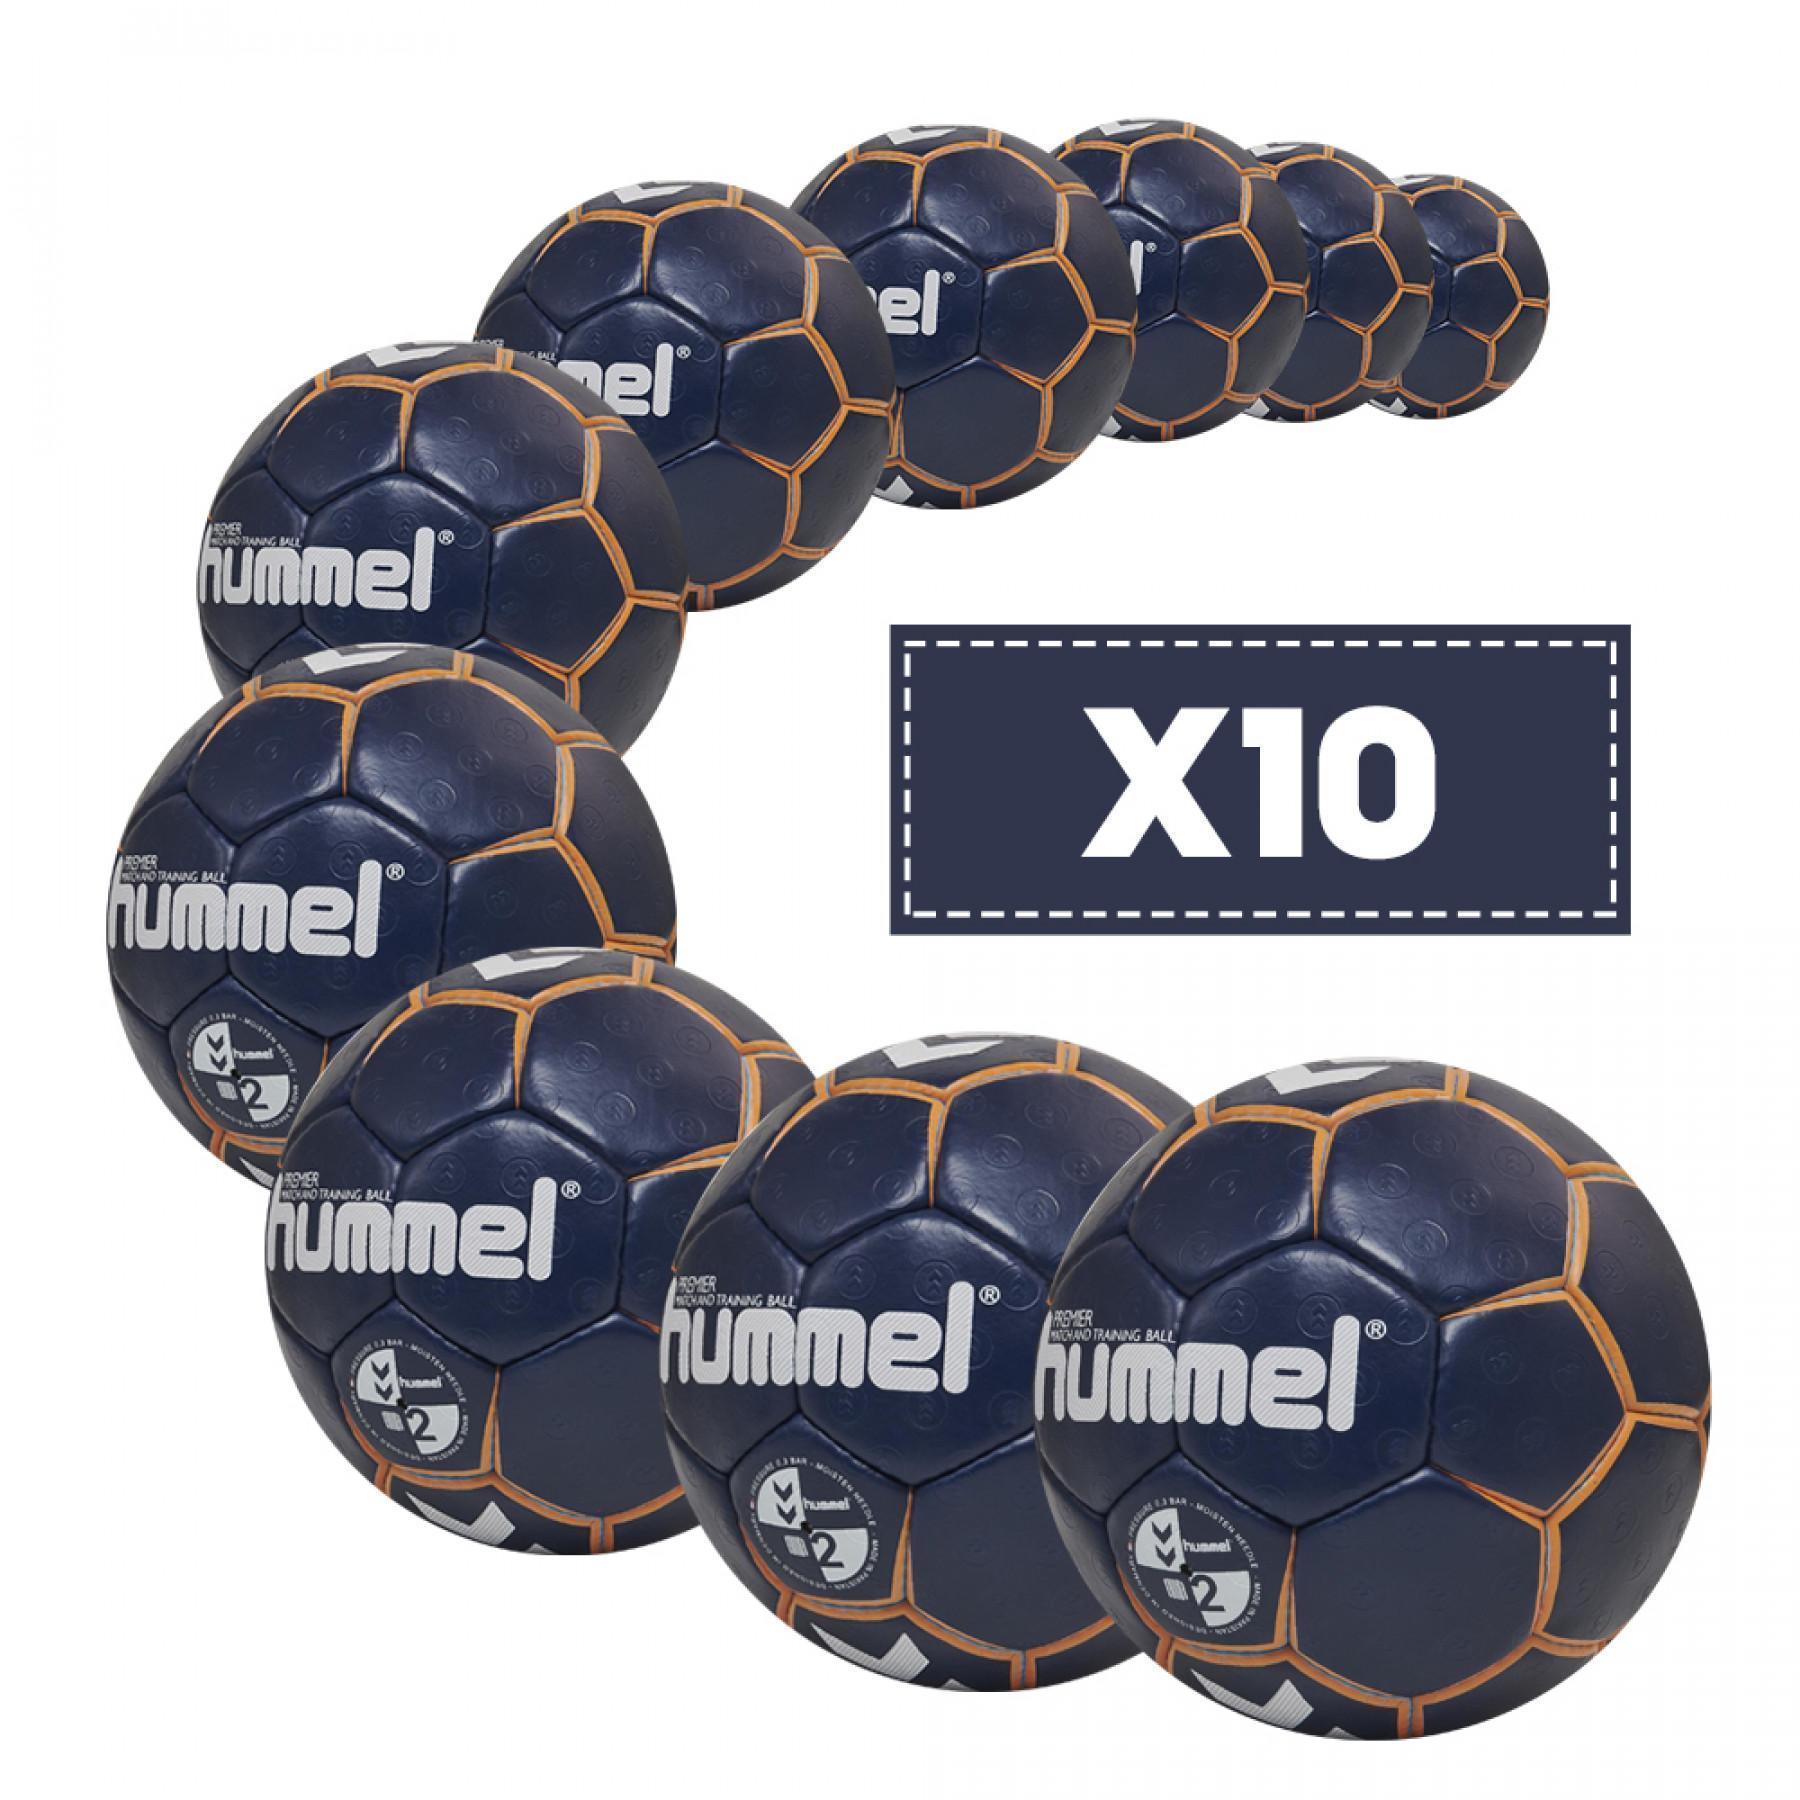 Förpackning med 10 ballonger Hummel Premier